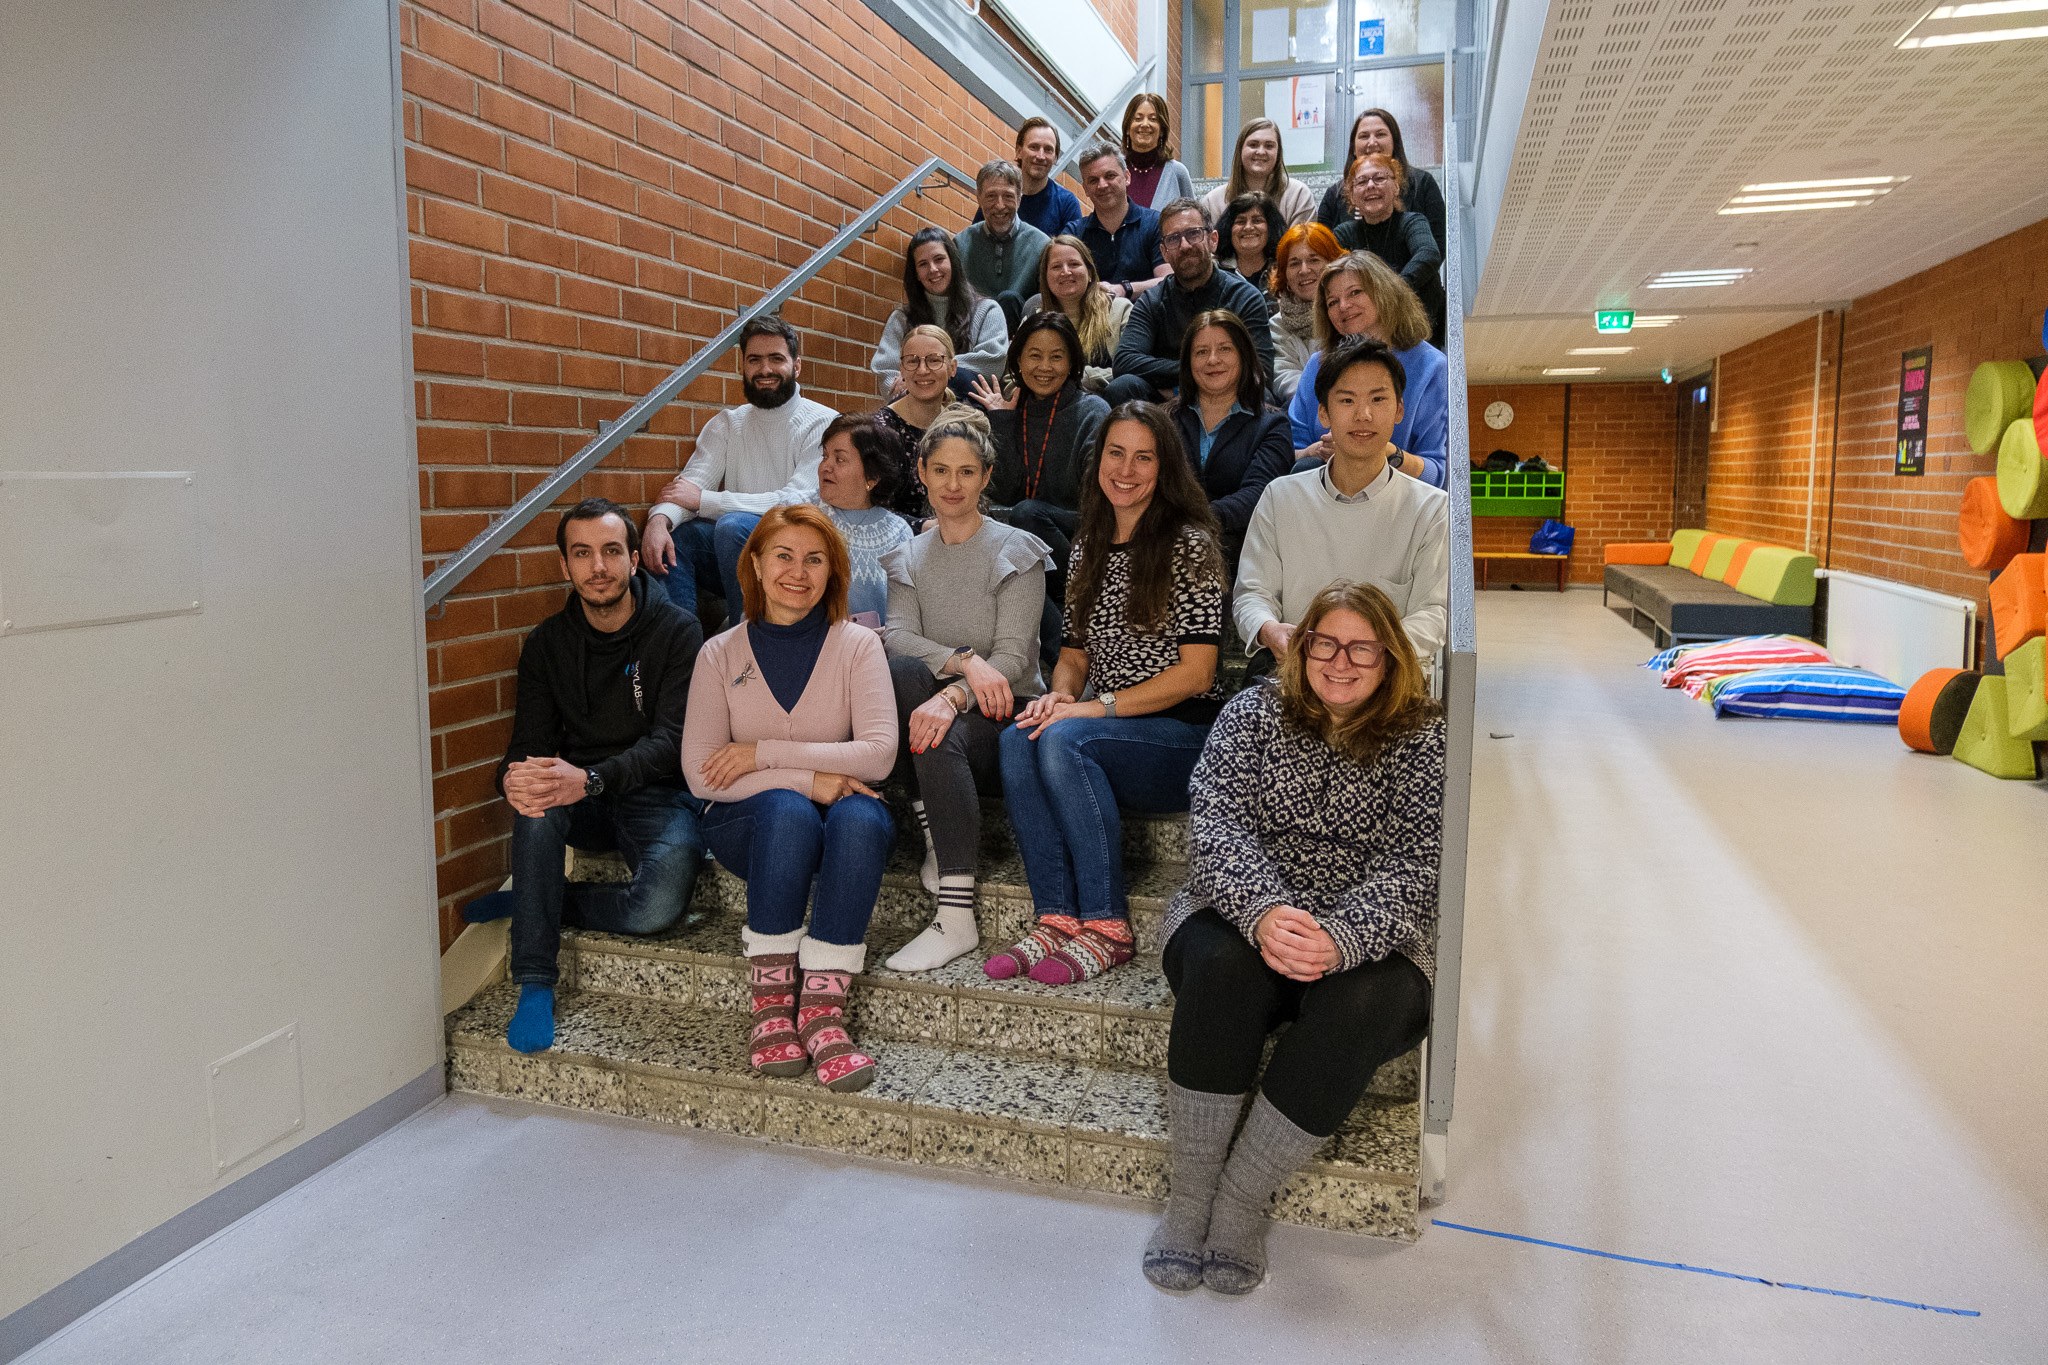 Kansainvälinen opettajaryhmä vaikuttui Oulun kasvatusalan innovaatioiden, kulttuurin ja menetelmien yhdistelmästä